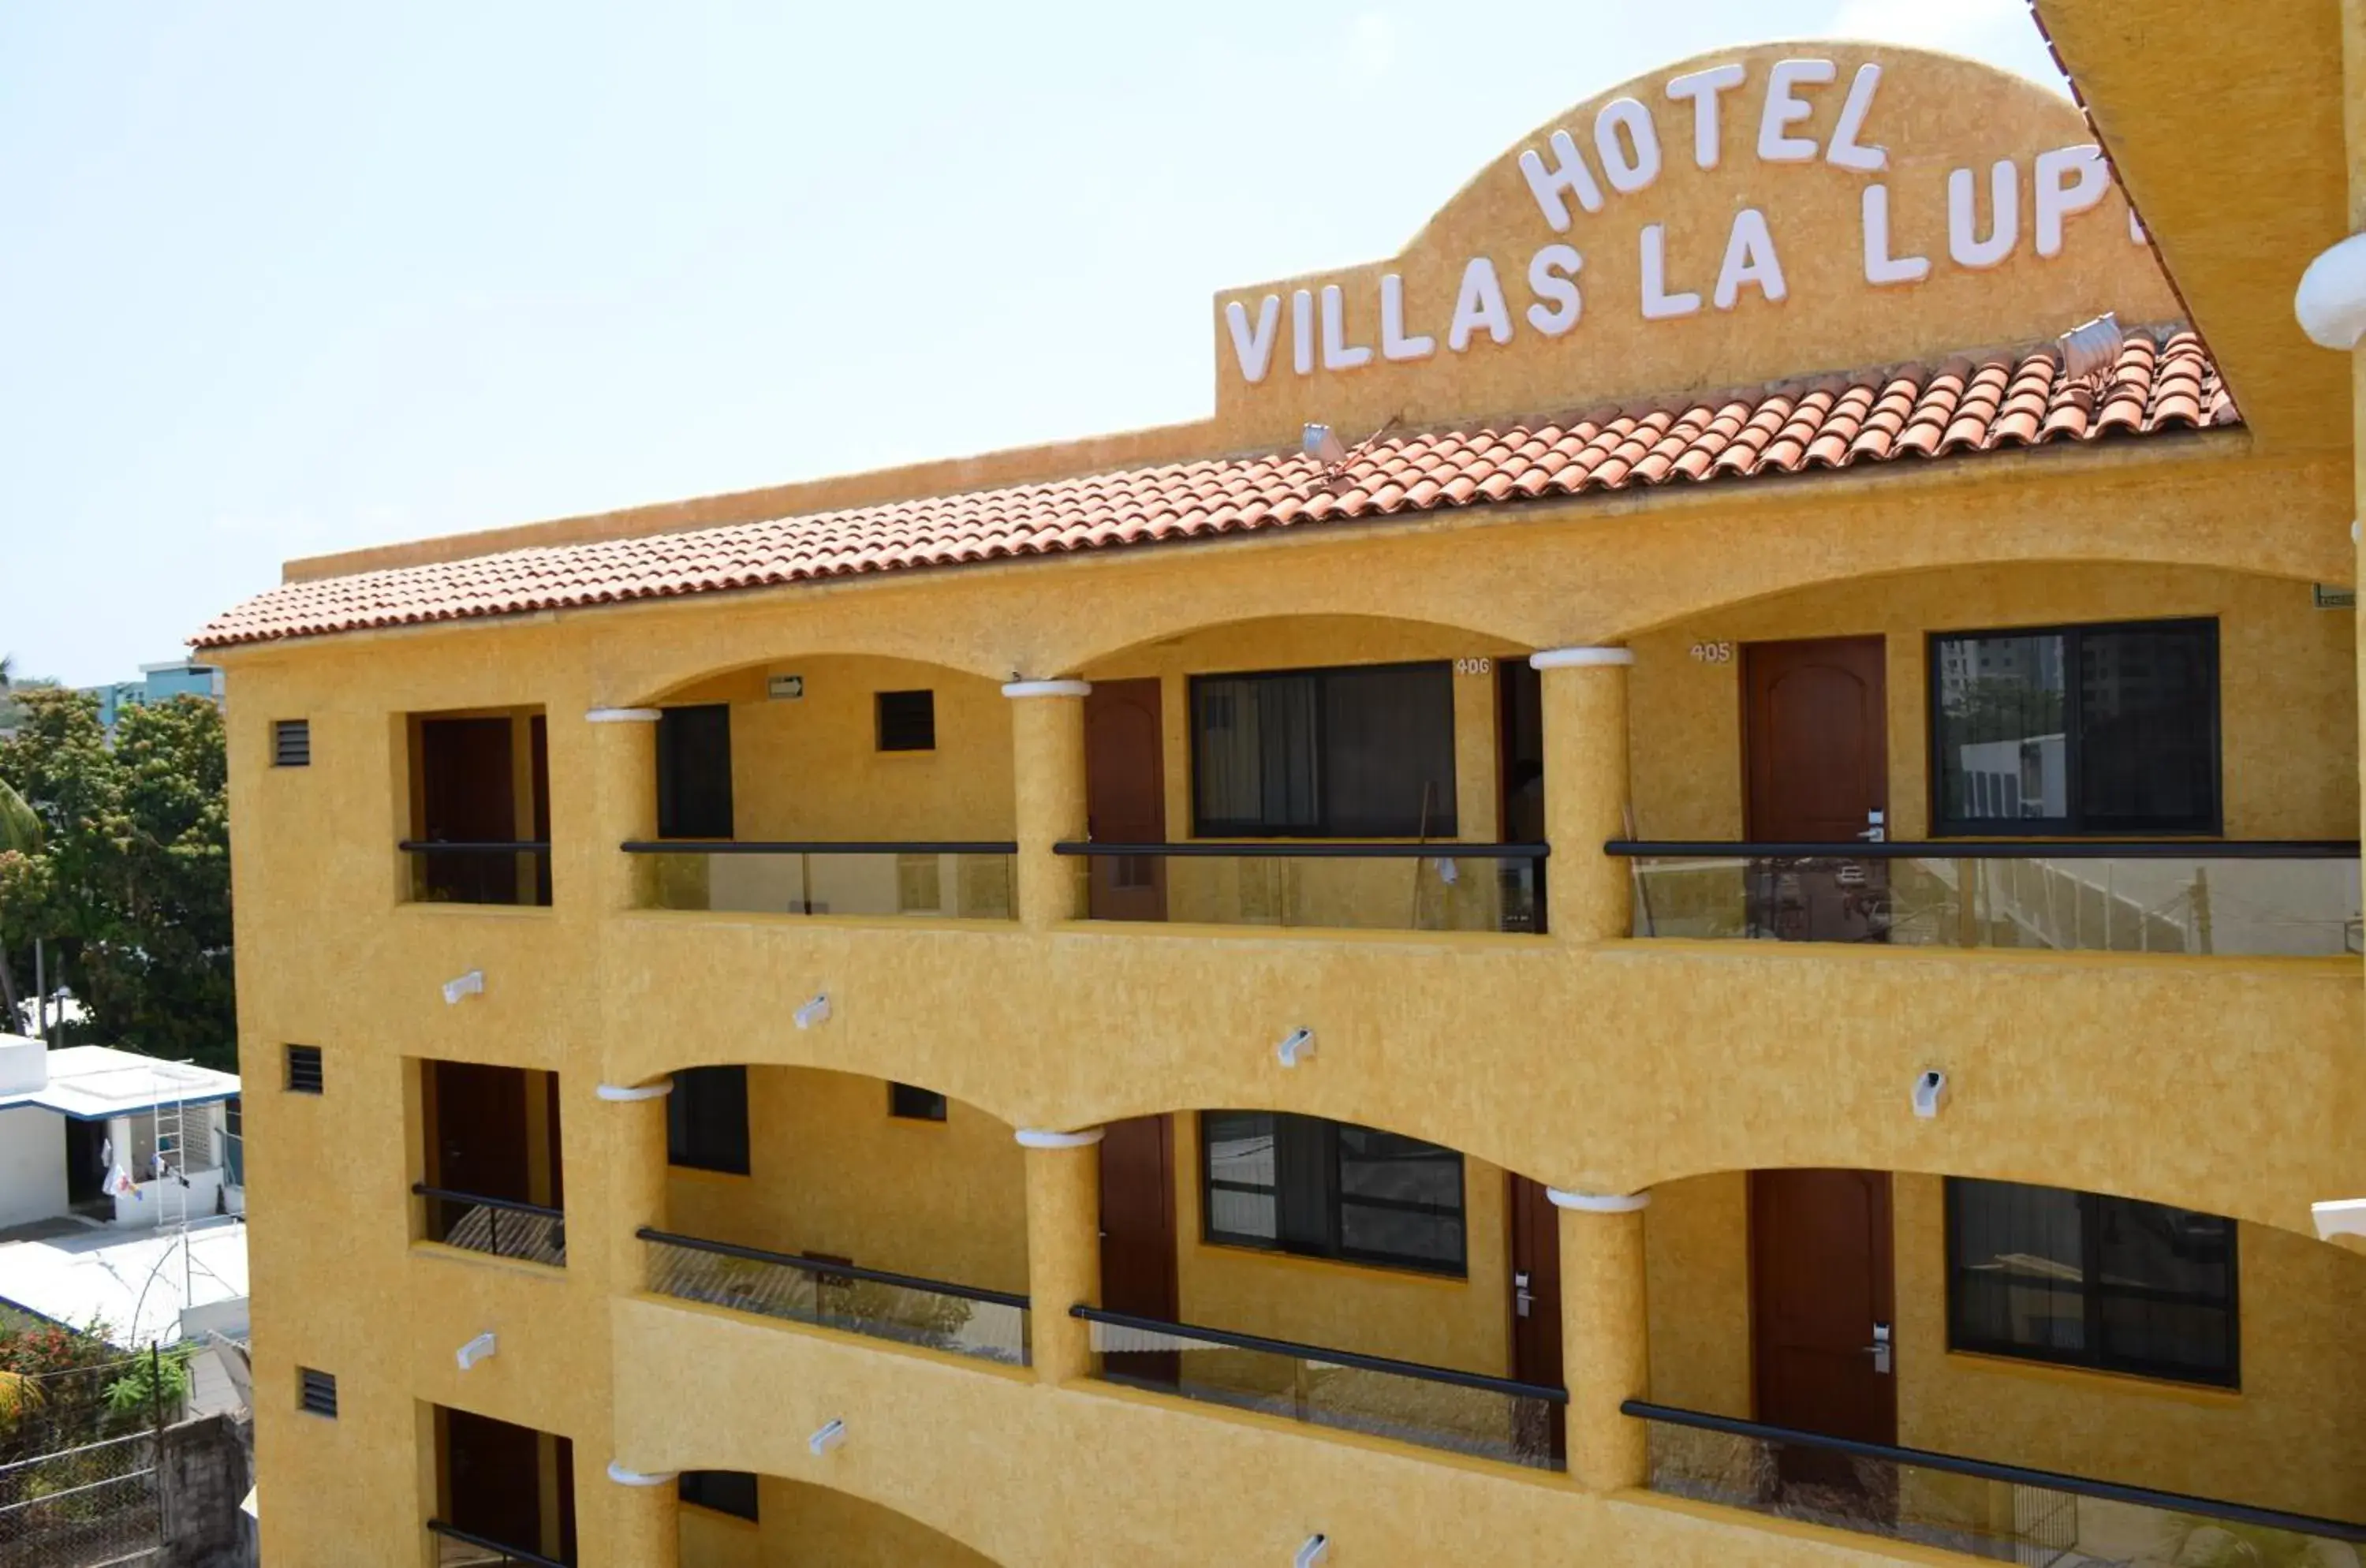 Area and facilities, Property Building in Villas La Lupita